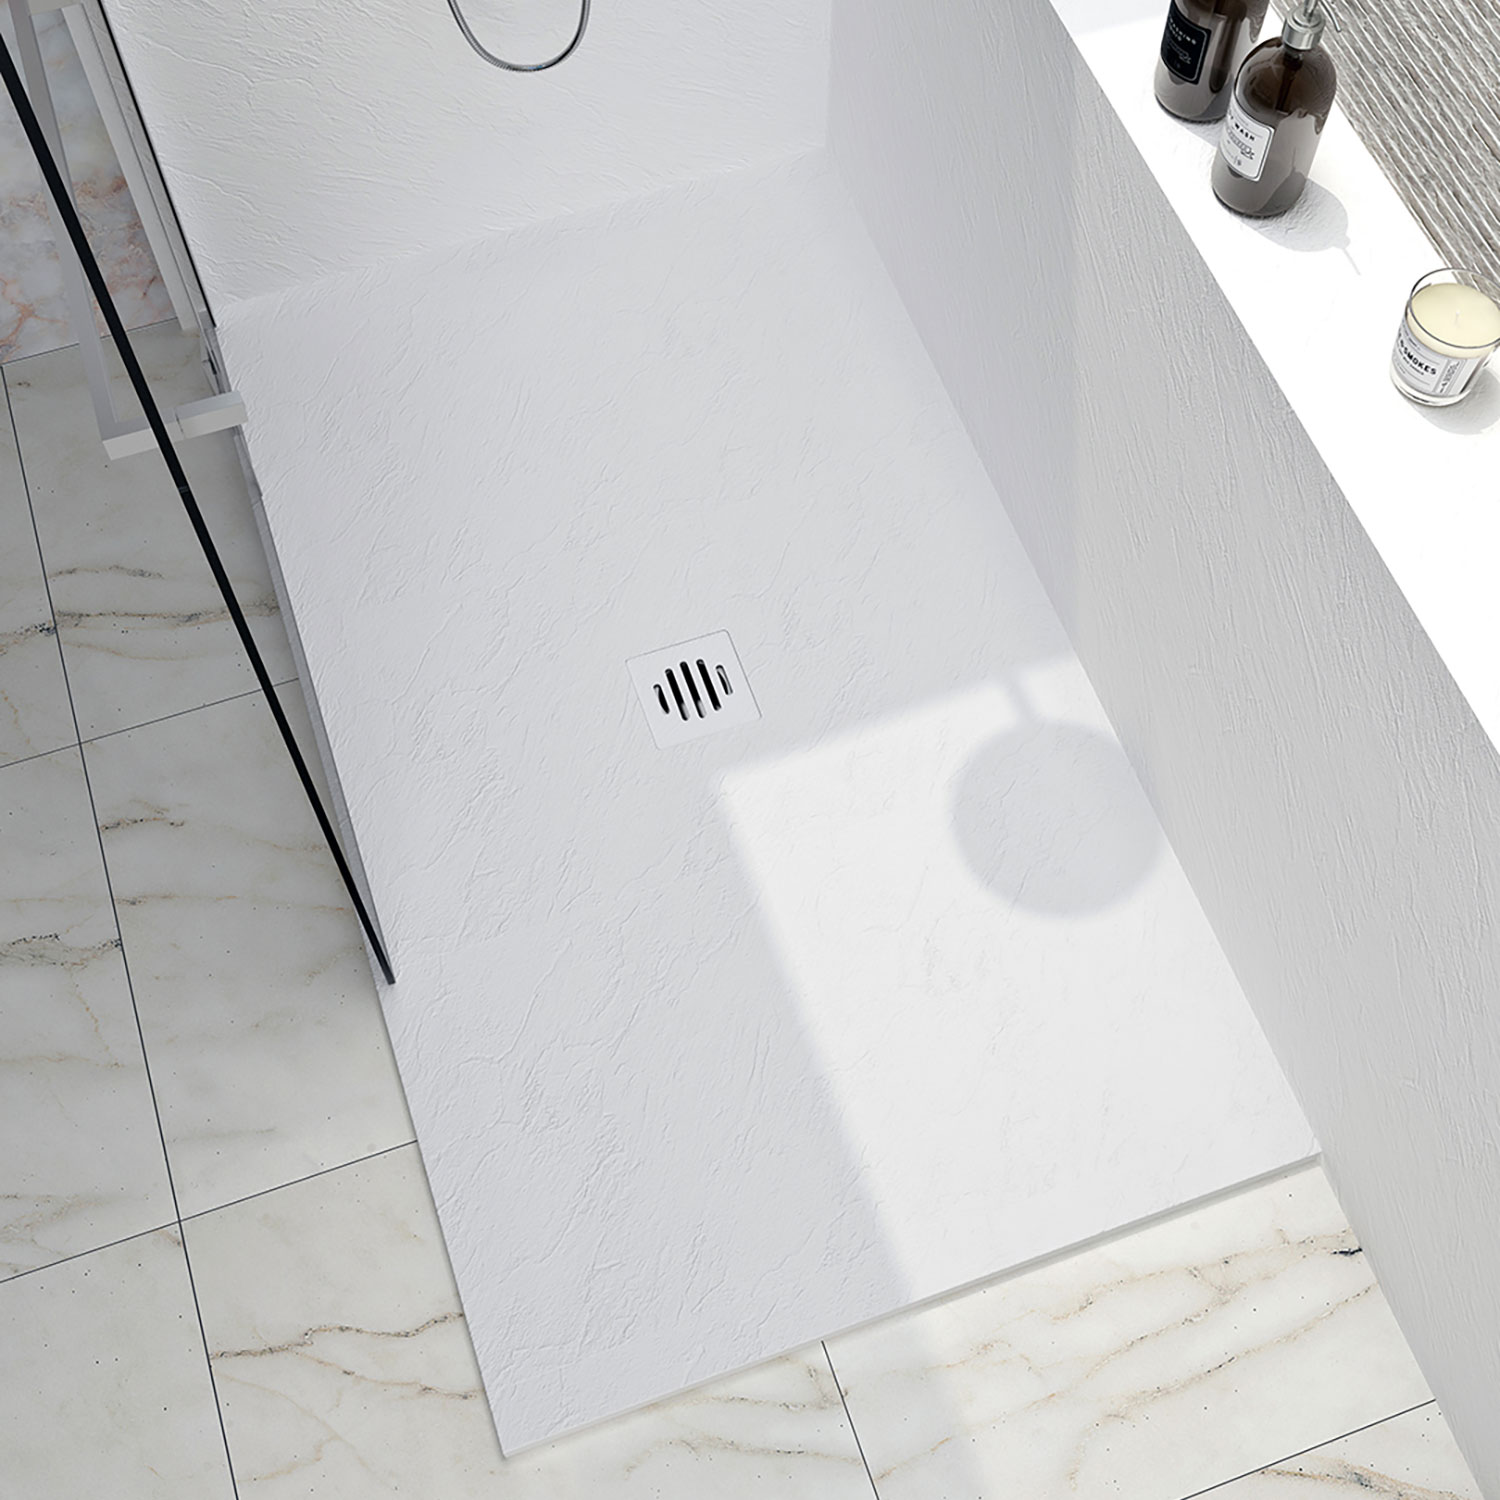 Shower base Slate 42 x 42, custom-made tile flange installation, in white